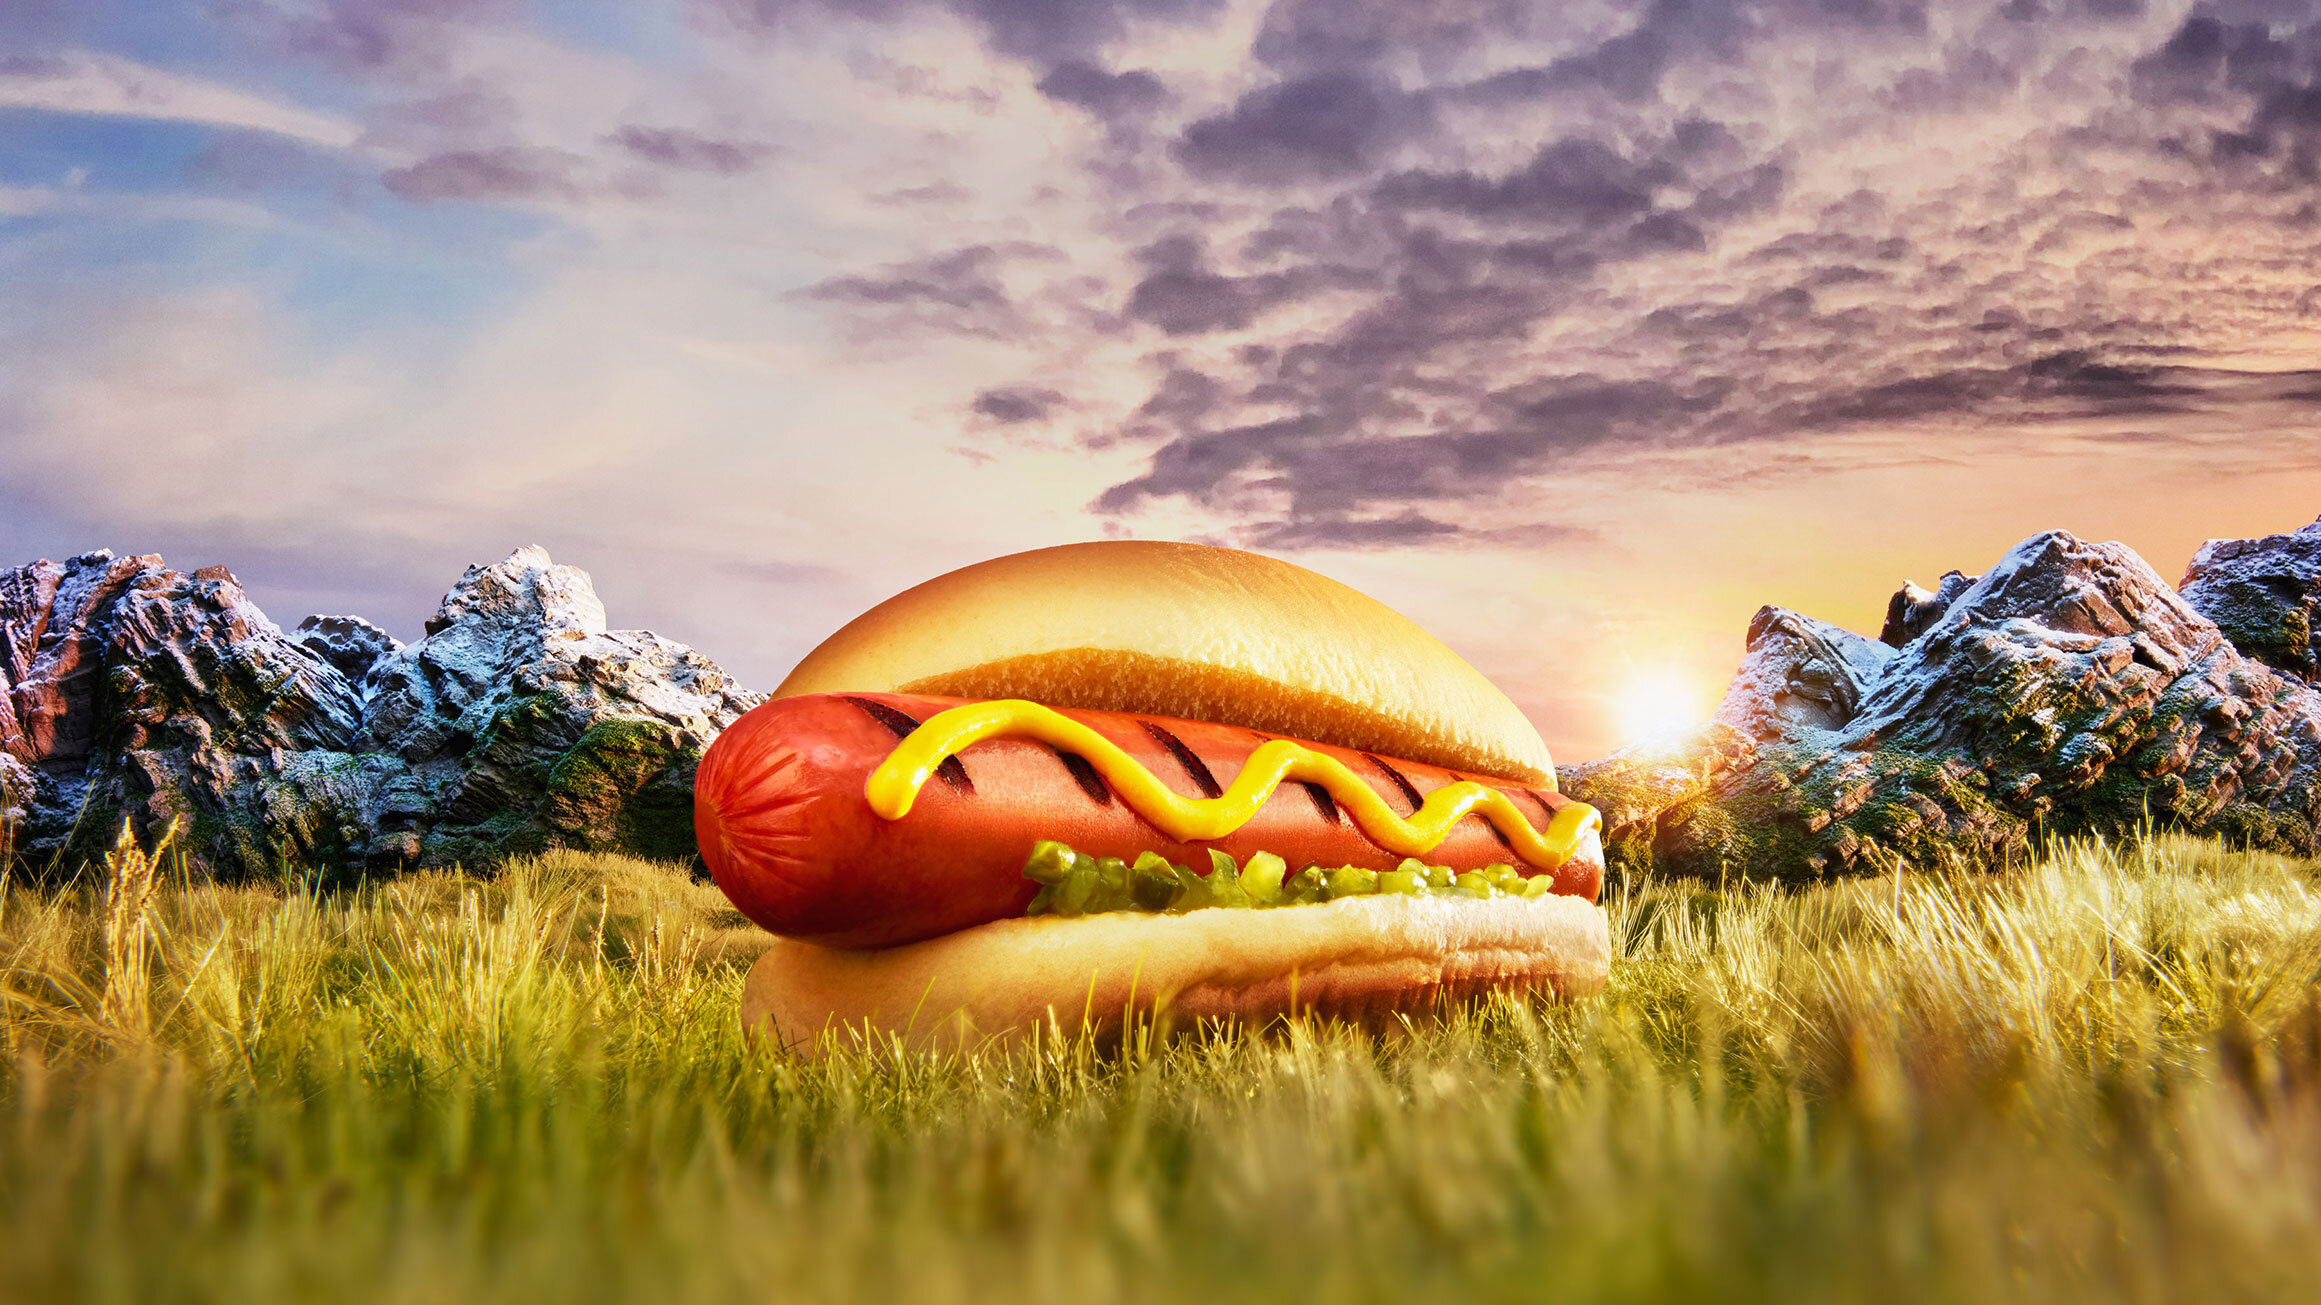 hotdog-final-16x9.jpg